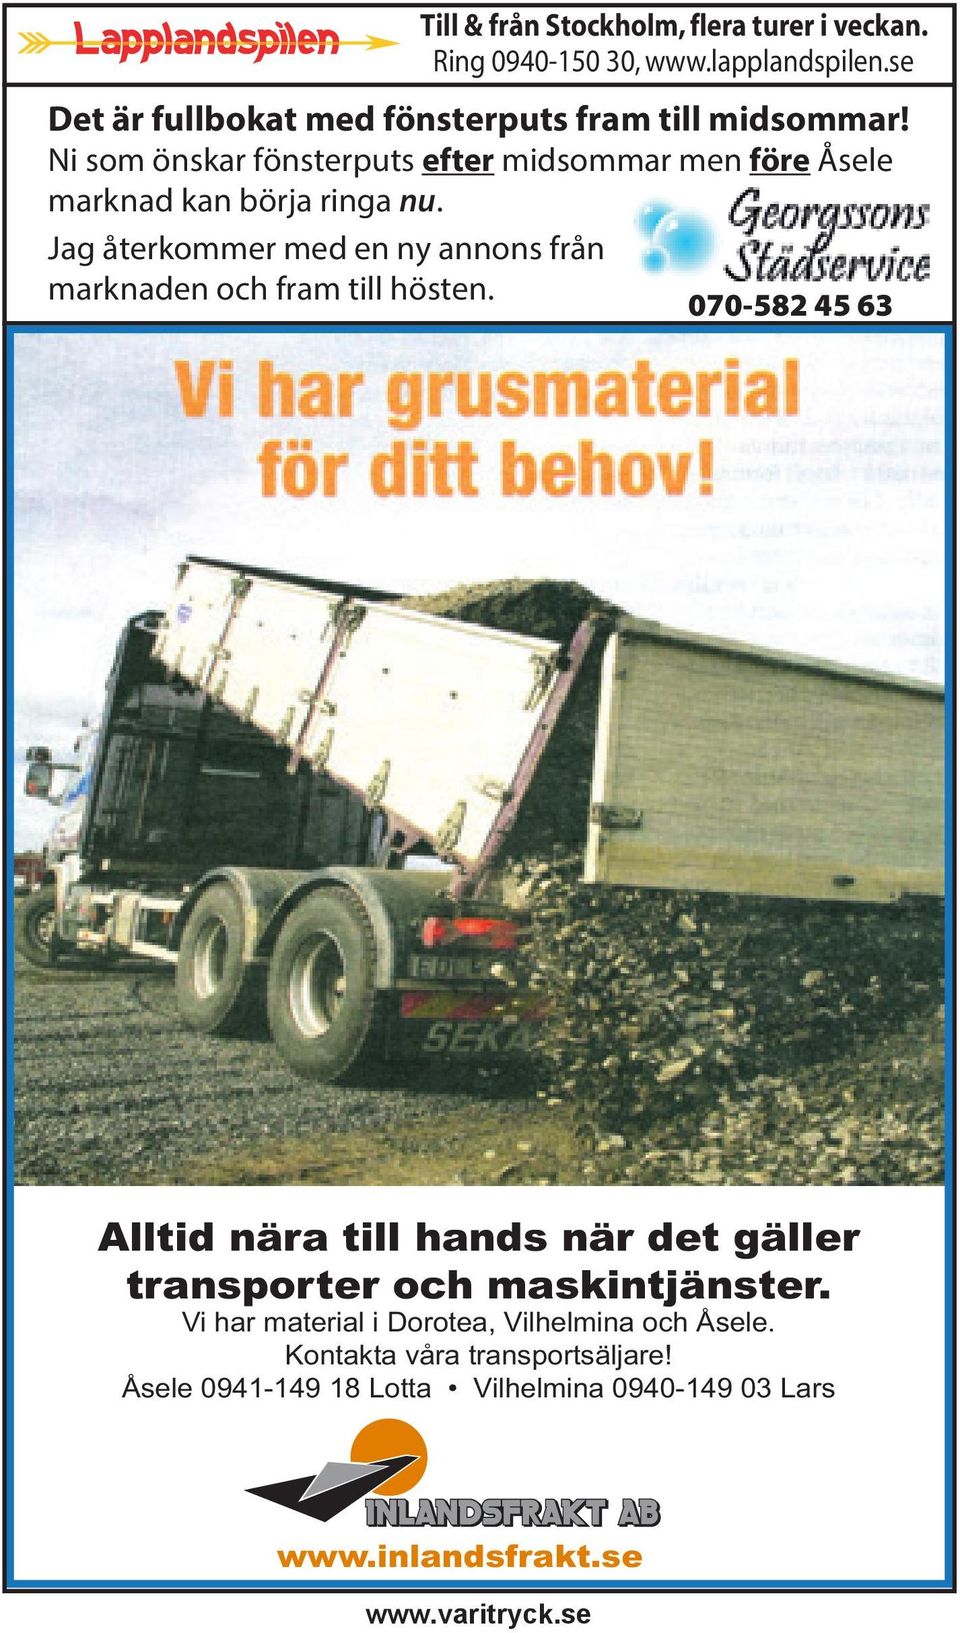 Ni som önskar fönsterputs efter midsommar men före Åsele marknad kan börja ringa nu.